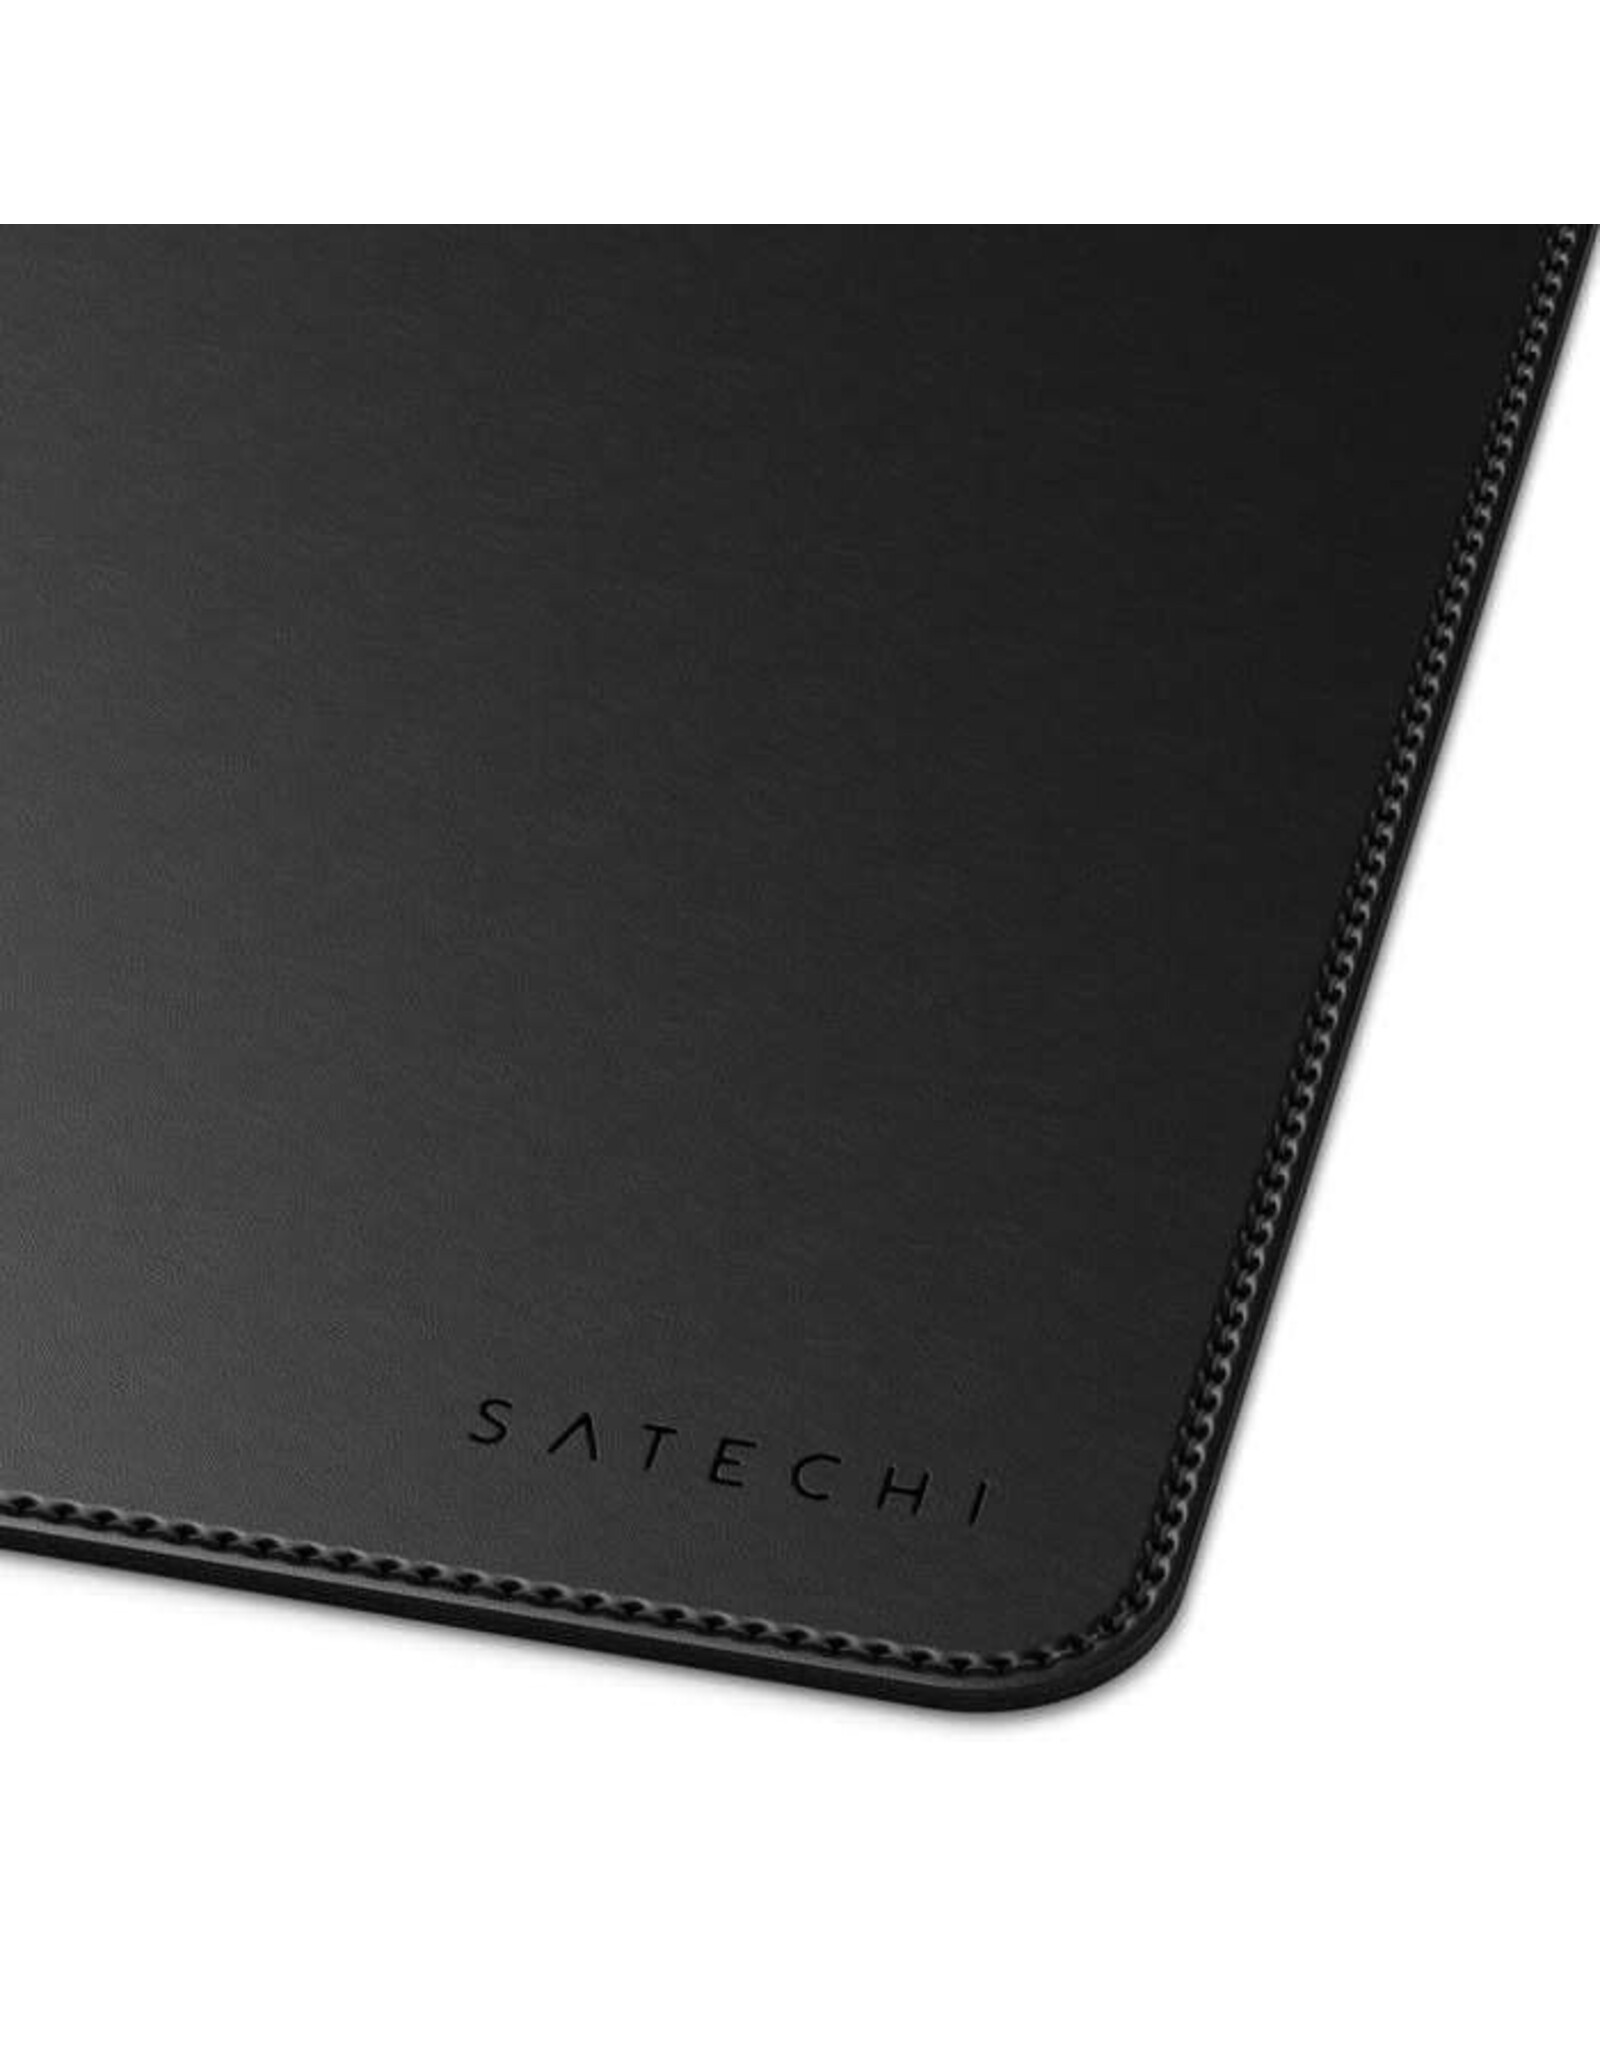 Satechi Satechi Eco Leather Deskmate (Black)